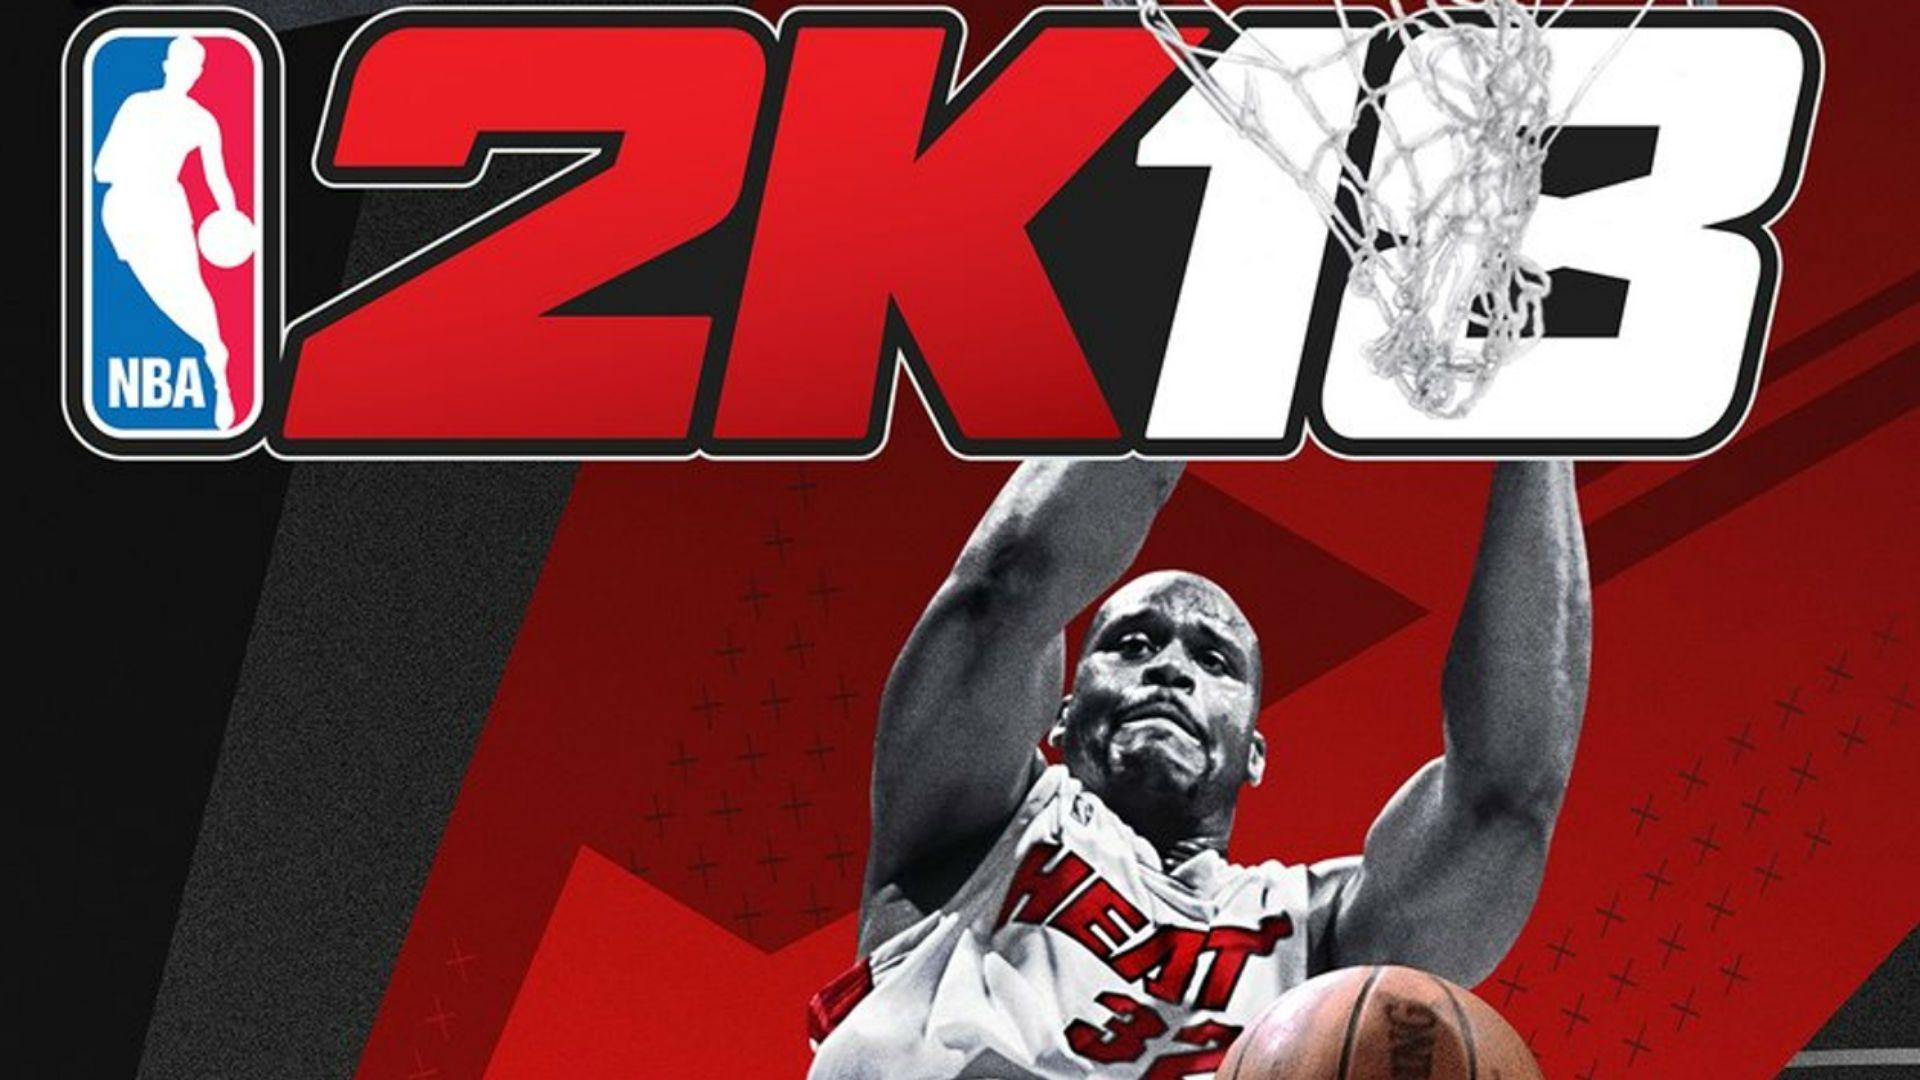 NBA 2K18 Game Pics. Beautiful image HD Picture & Desktop Wallpaper